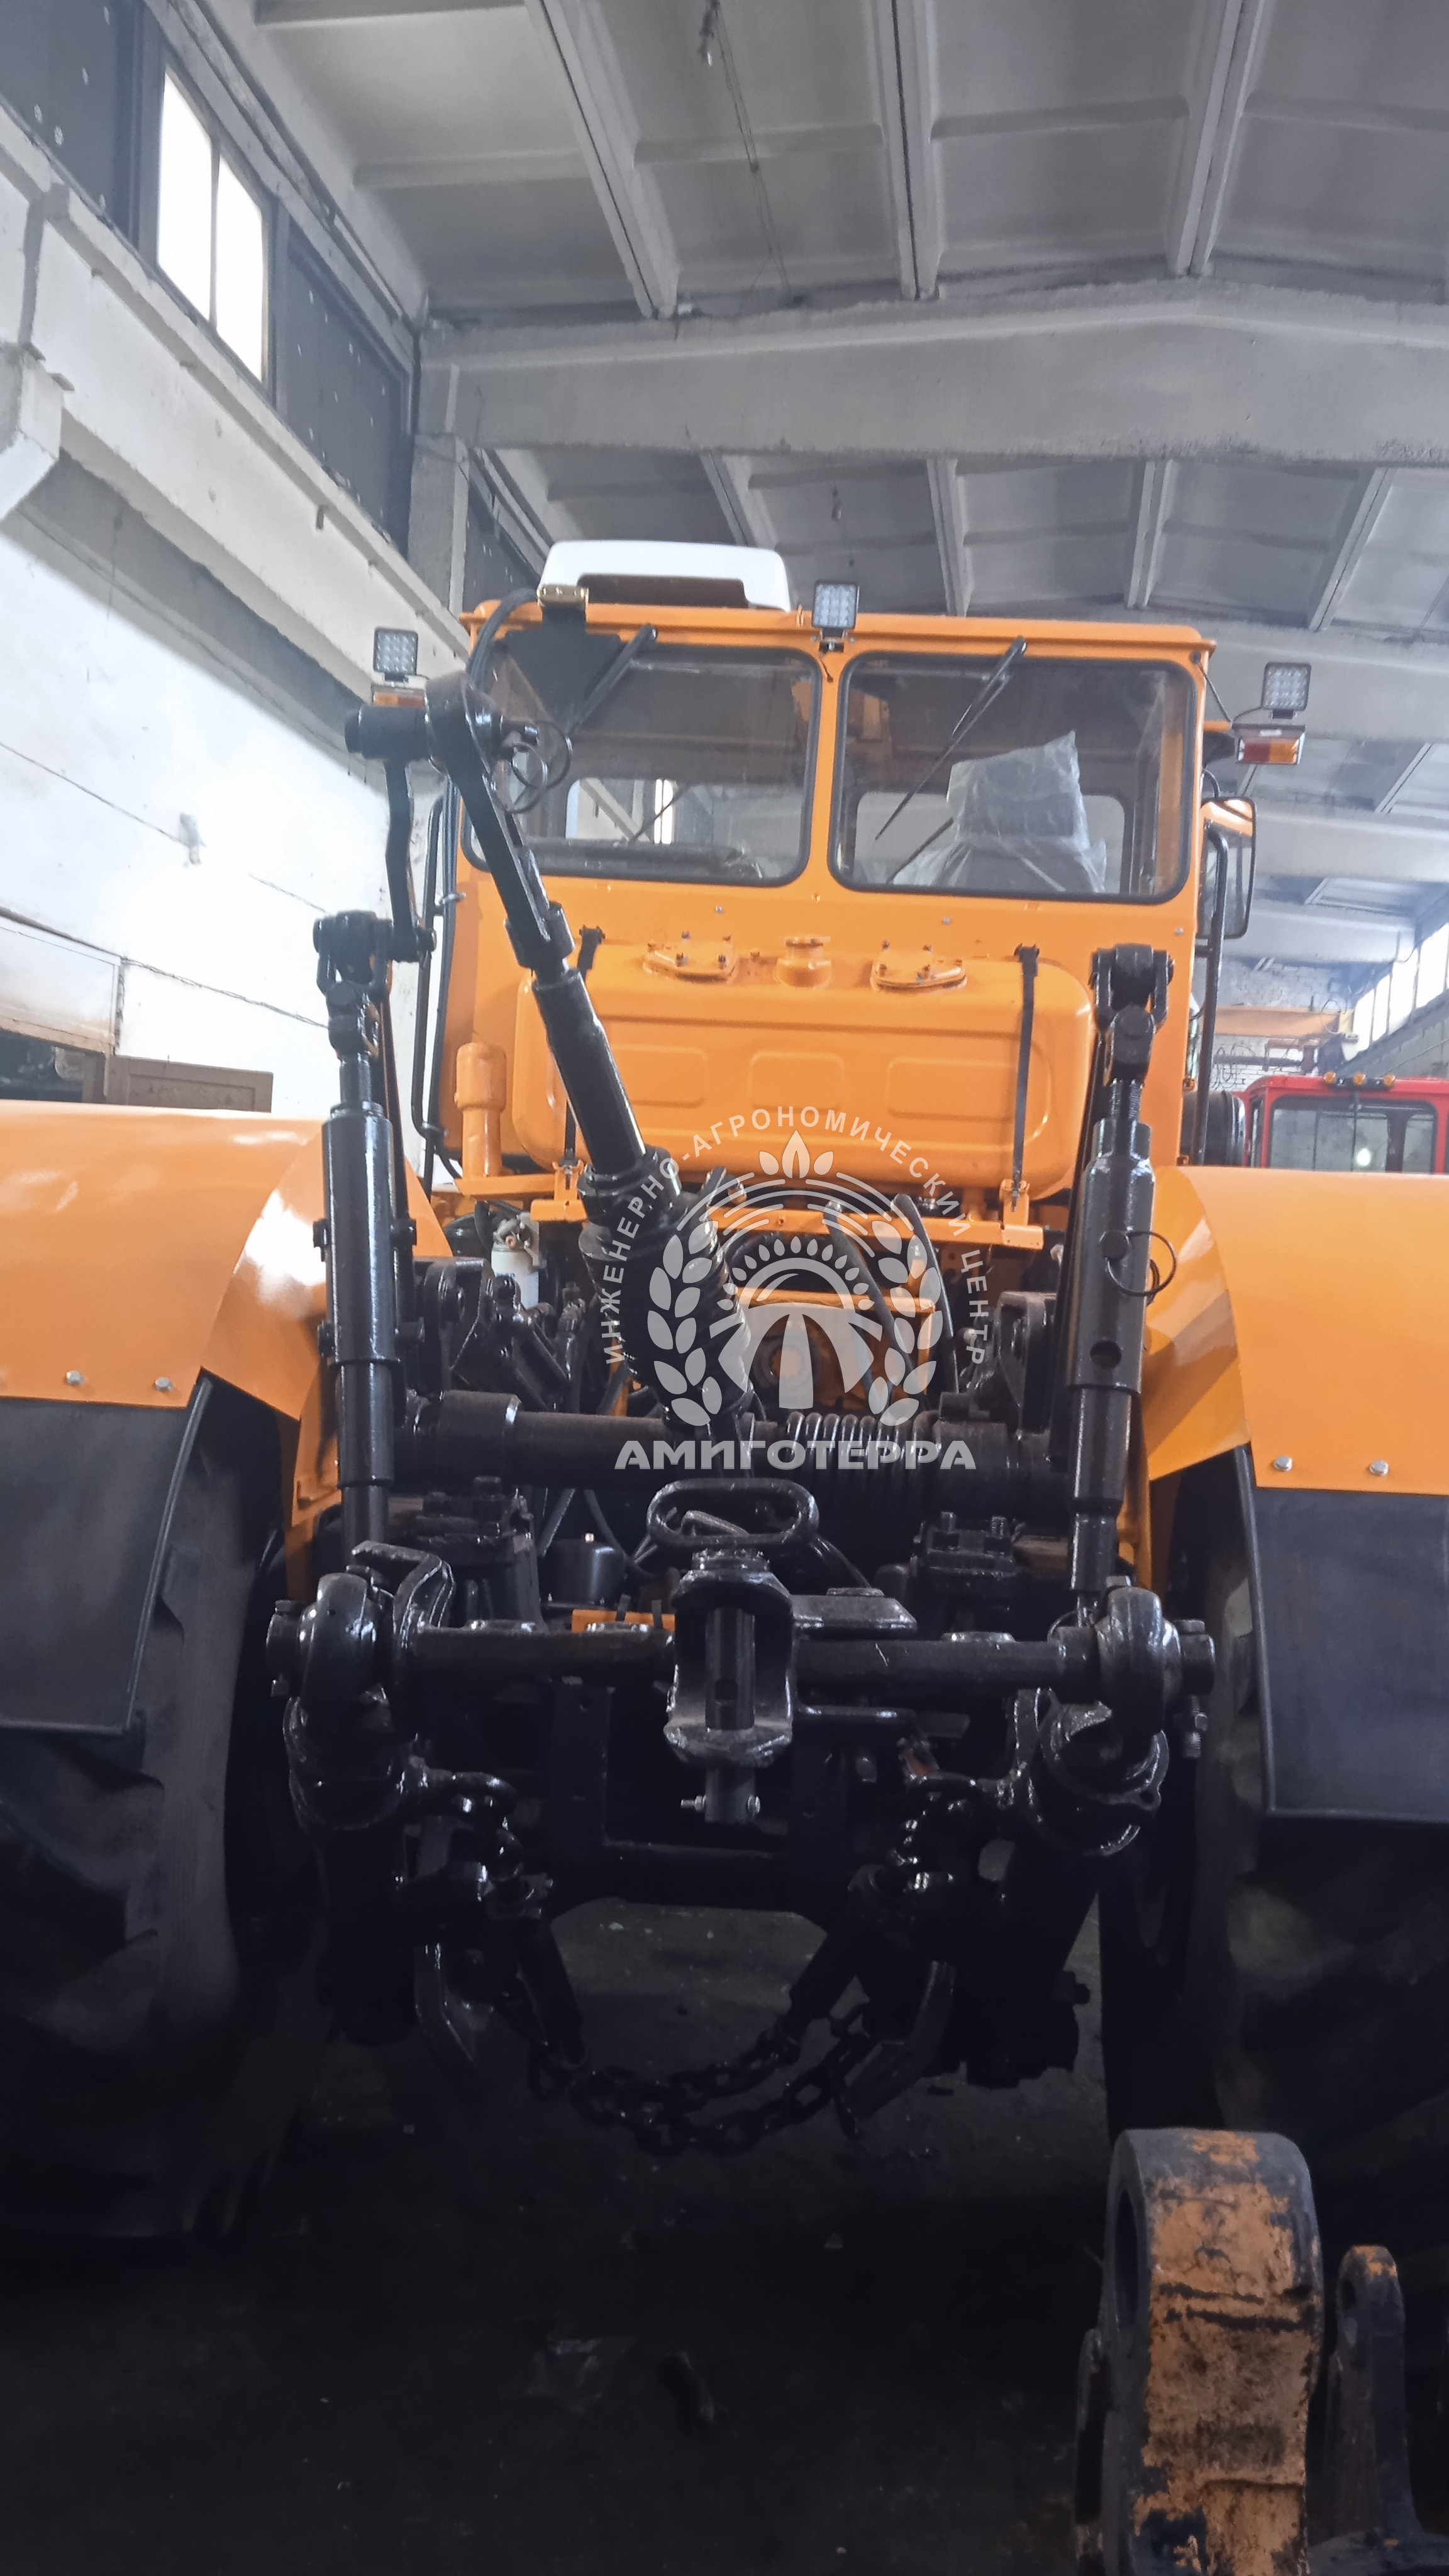 Узловой ремонт тракторов К-700 и Т-150, капремонт сельхозтехника